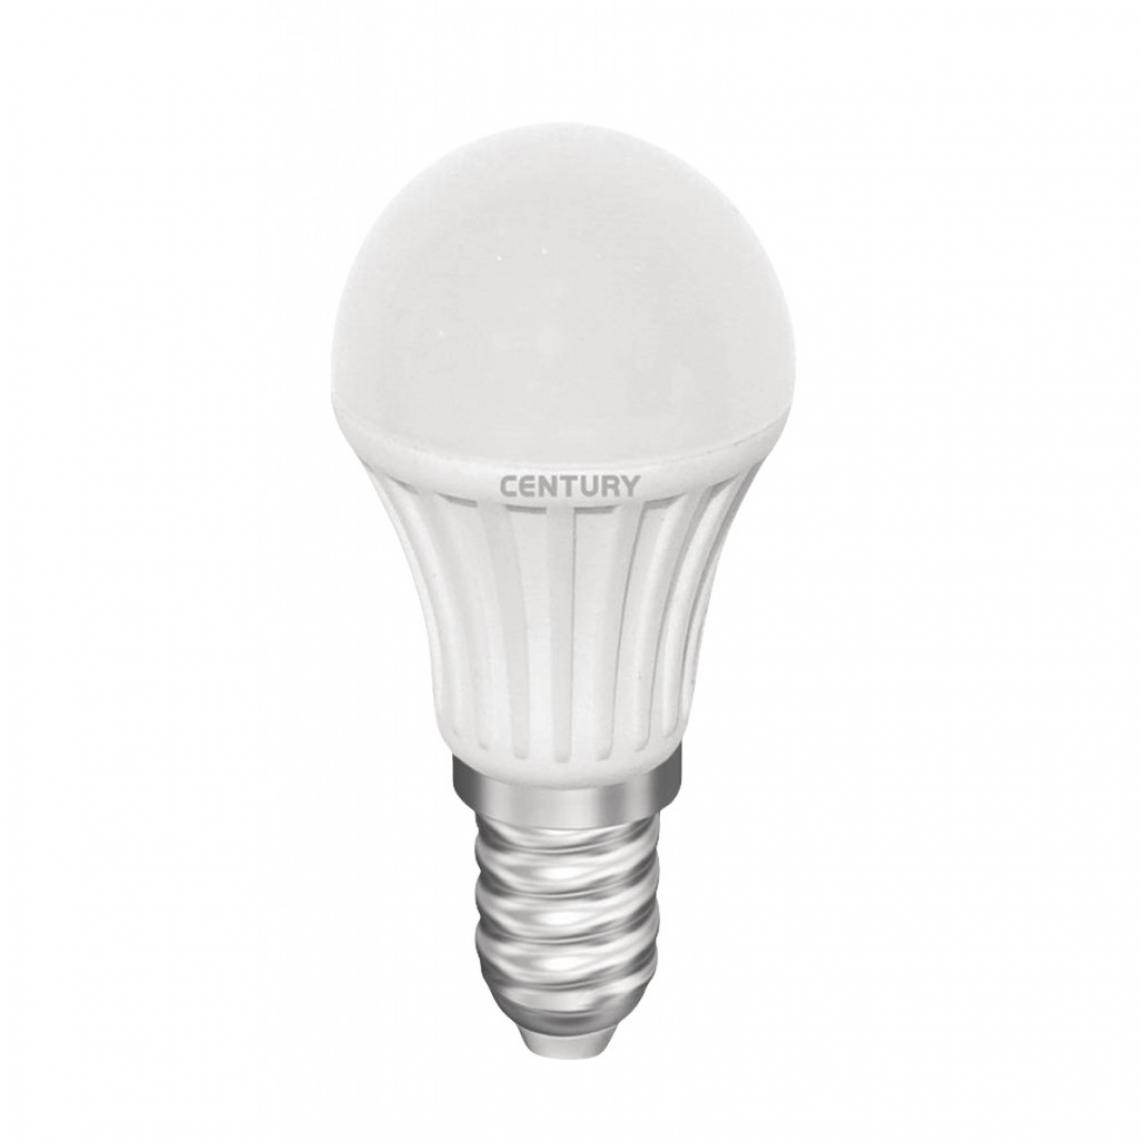 Alpexe - Ampoule LED E14 GLS 3 W 240 lm 3000 K - Ampoules LED